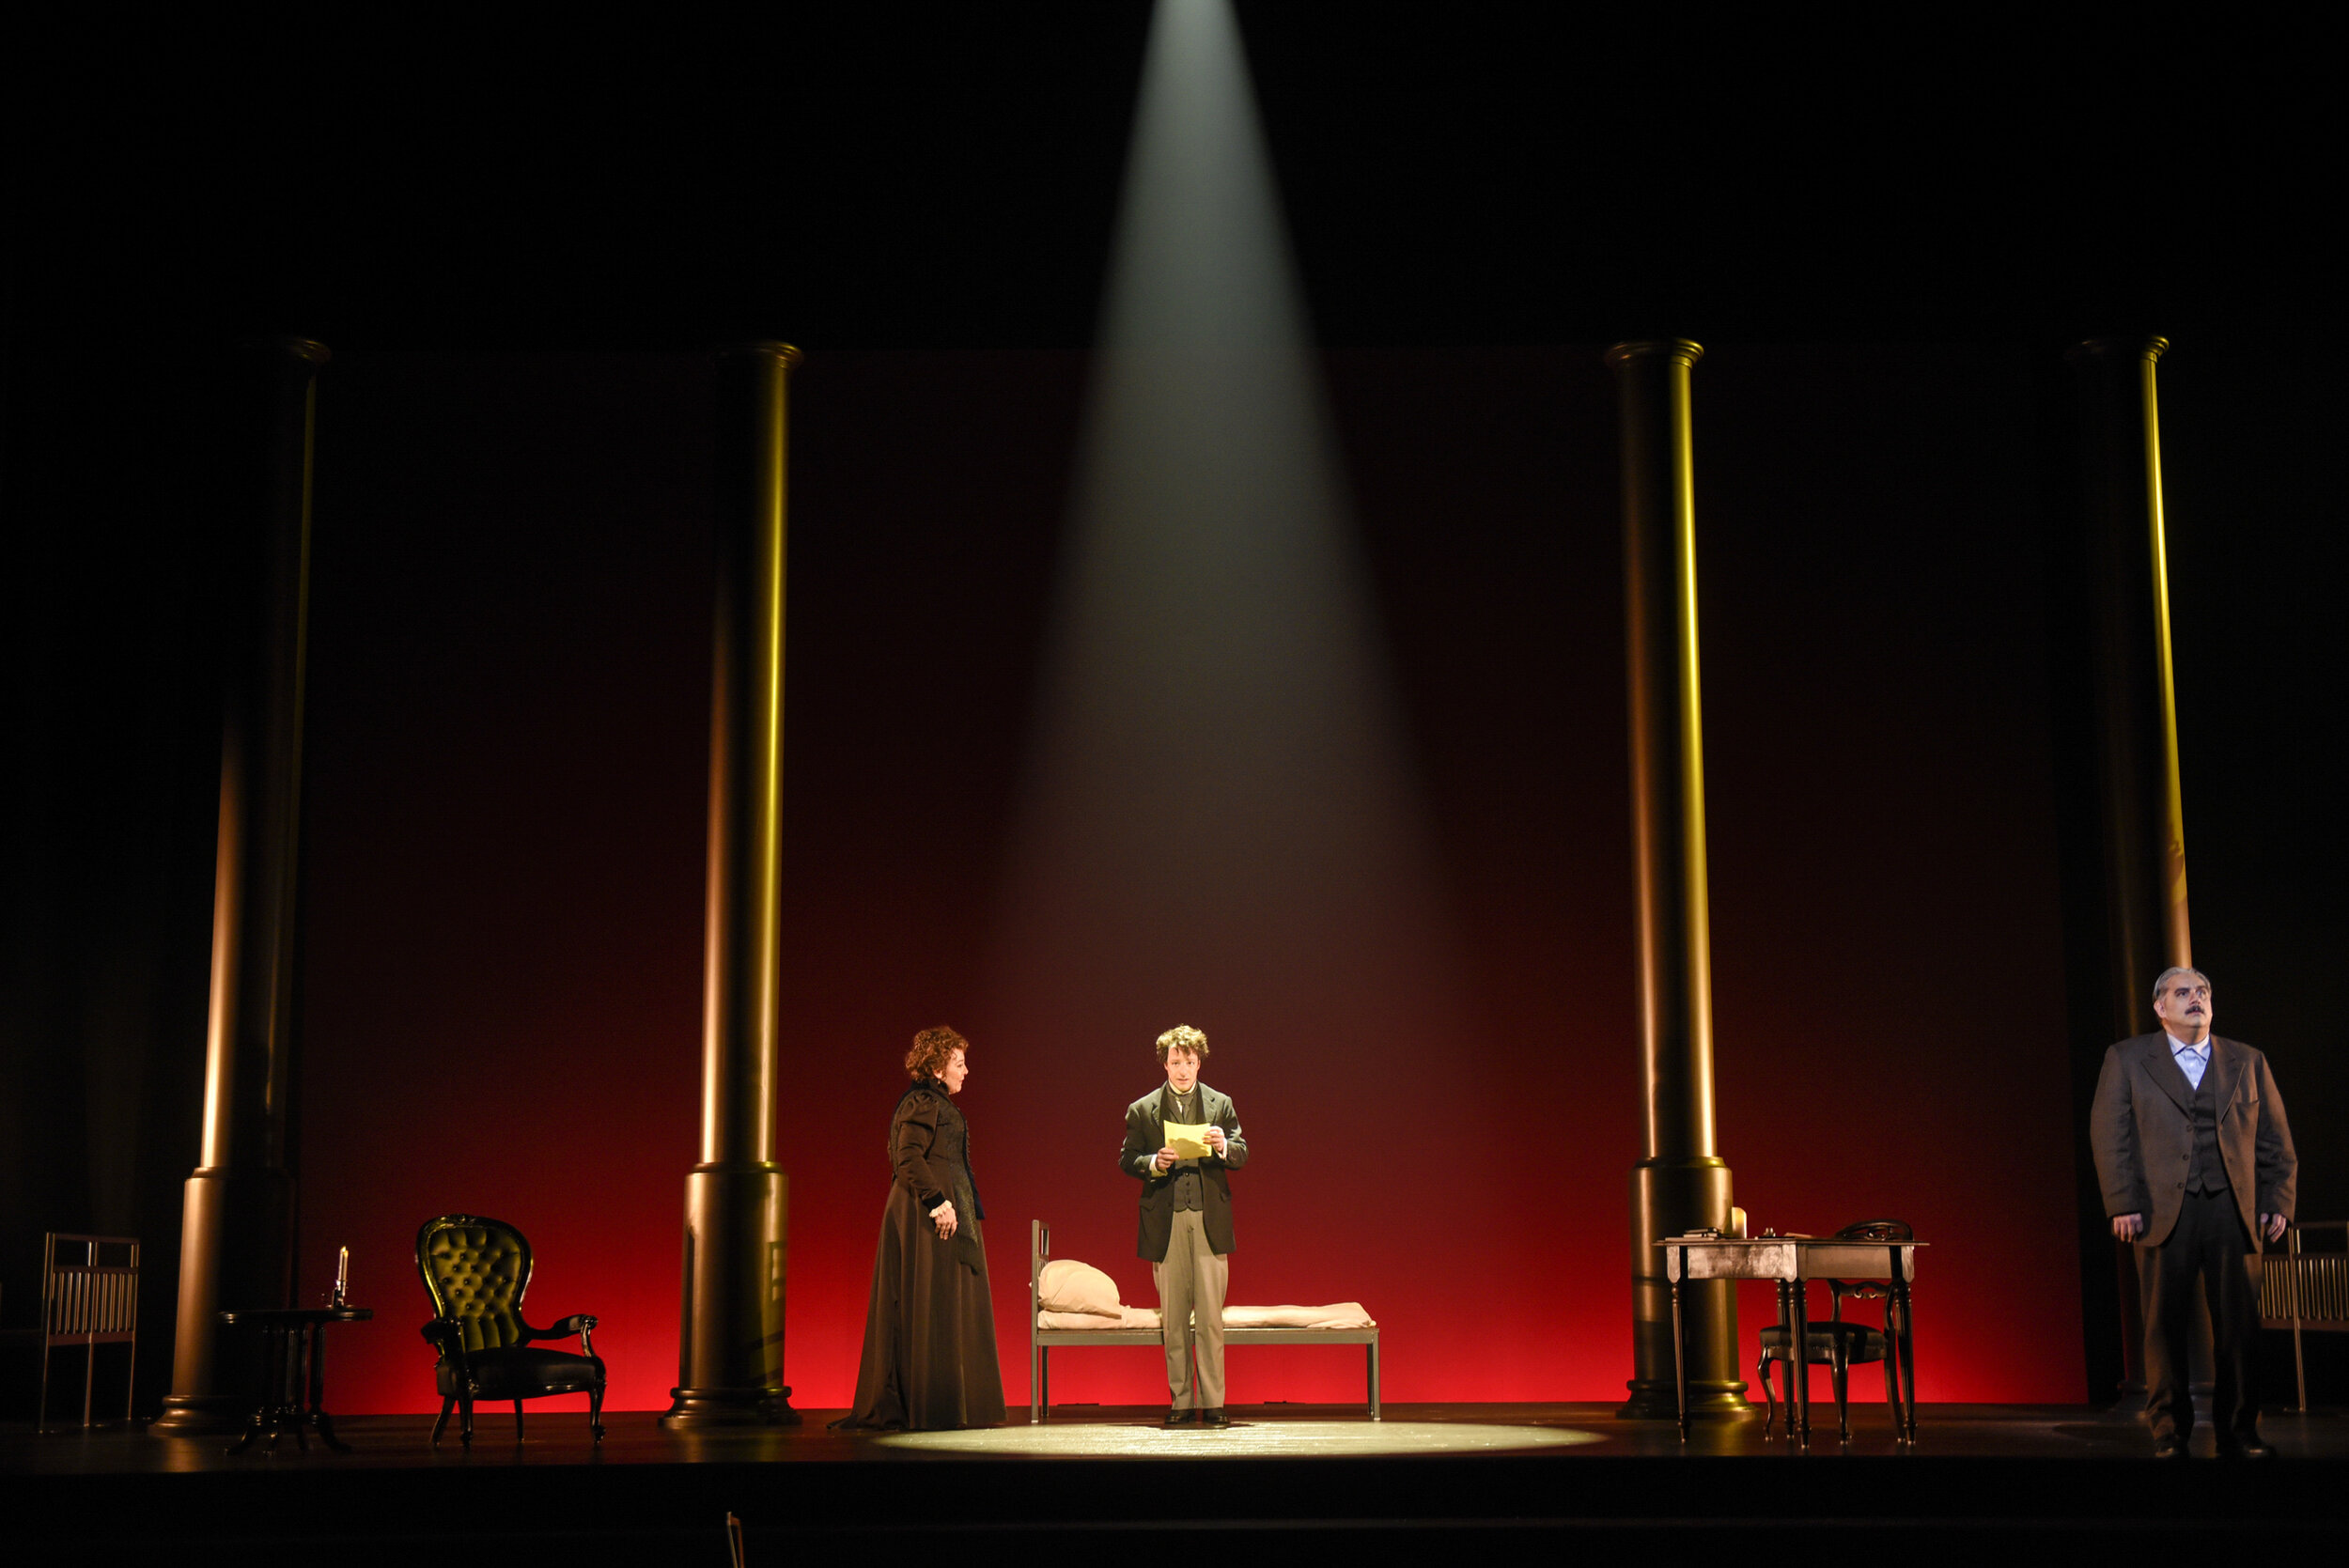  Nelligan, Théâtre du Nouveau Monde, 2020  Photo by Yves Renaud 